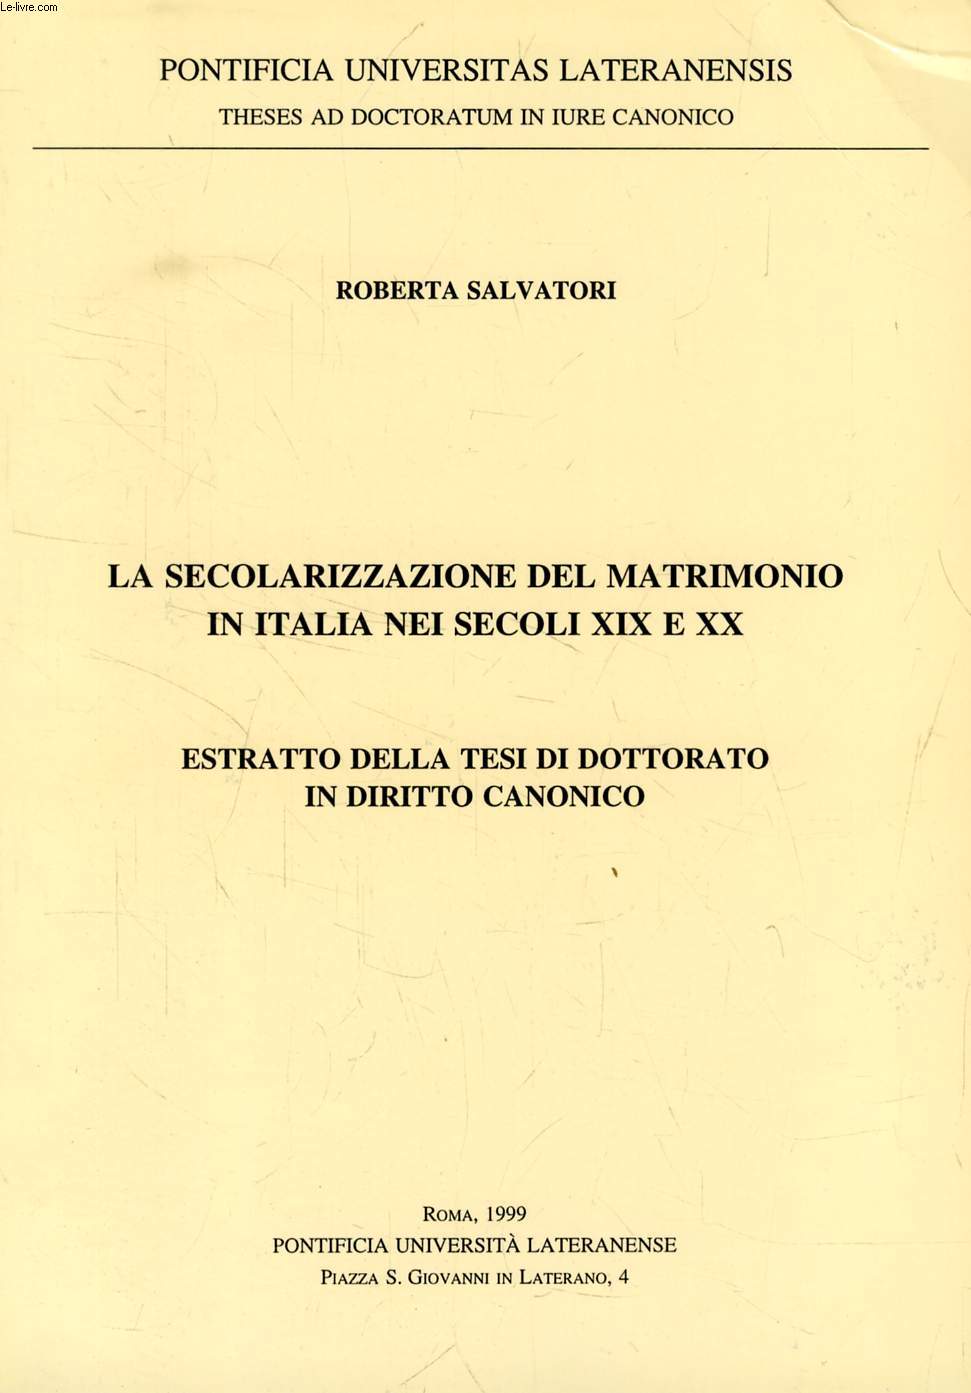 LA SECOLARIZZAZIONE DEL MATRIMONIO IN ITALIA NEI SECOLI XIX E XX (ESTRATTO DELLA TESI)